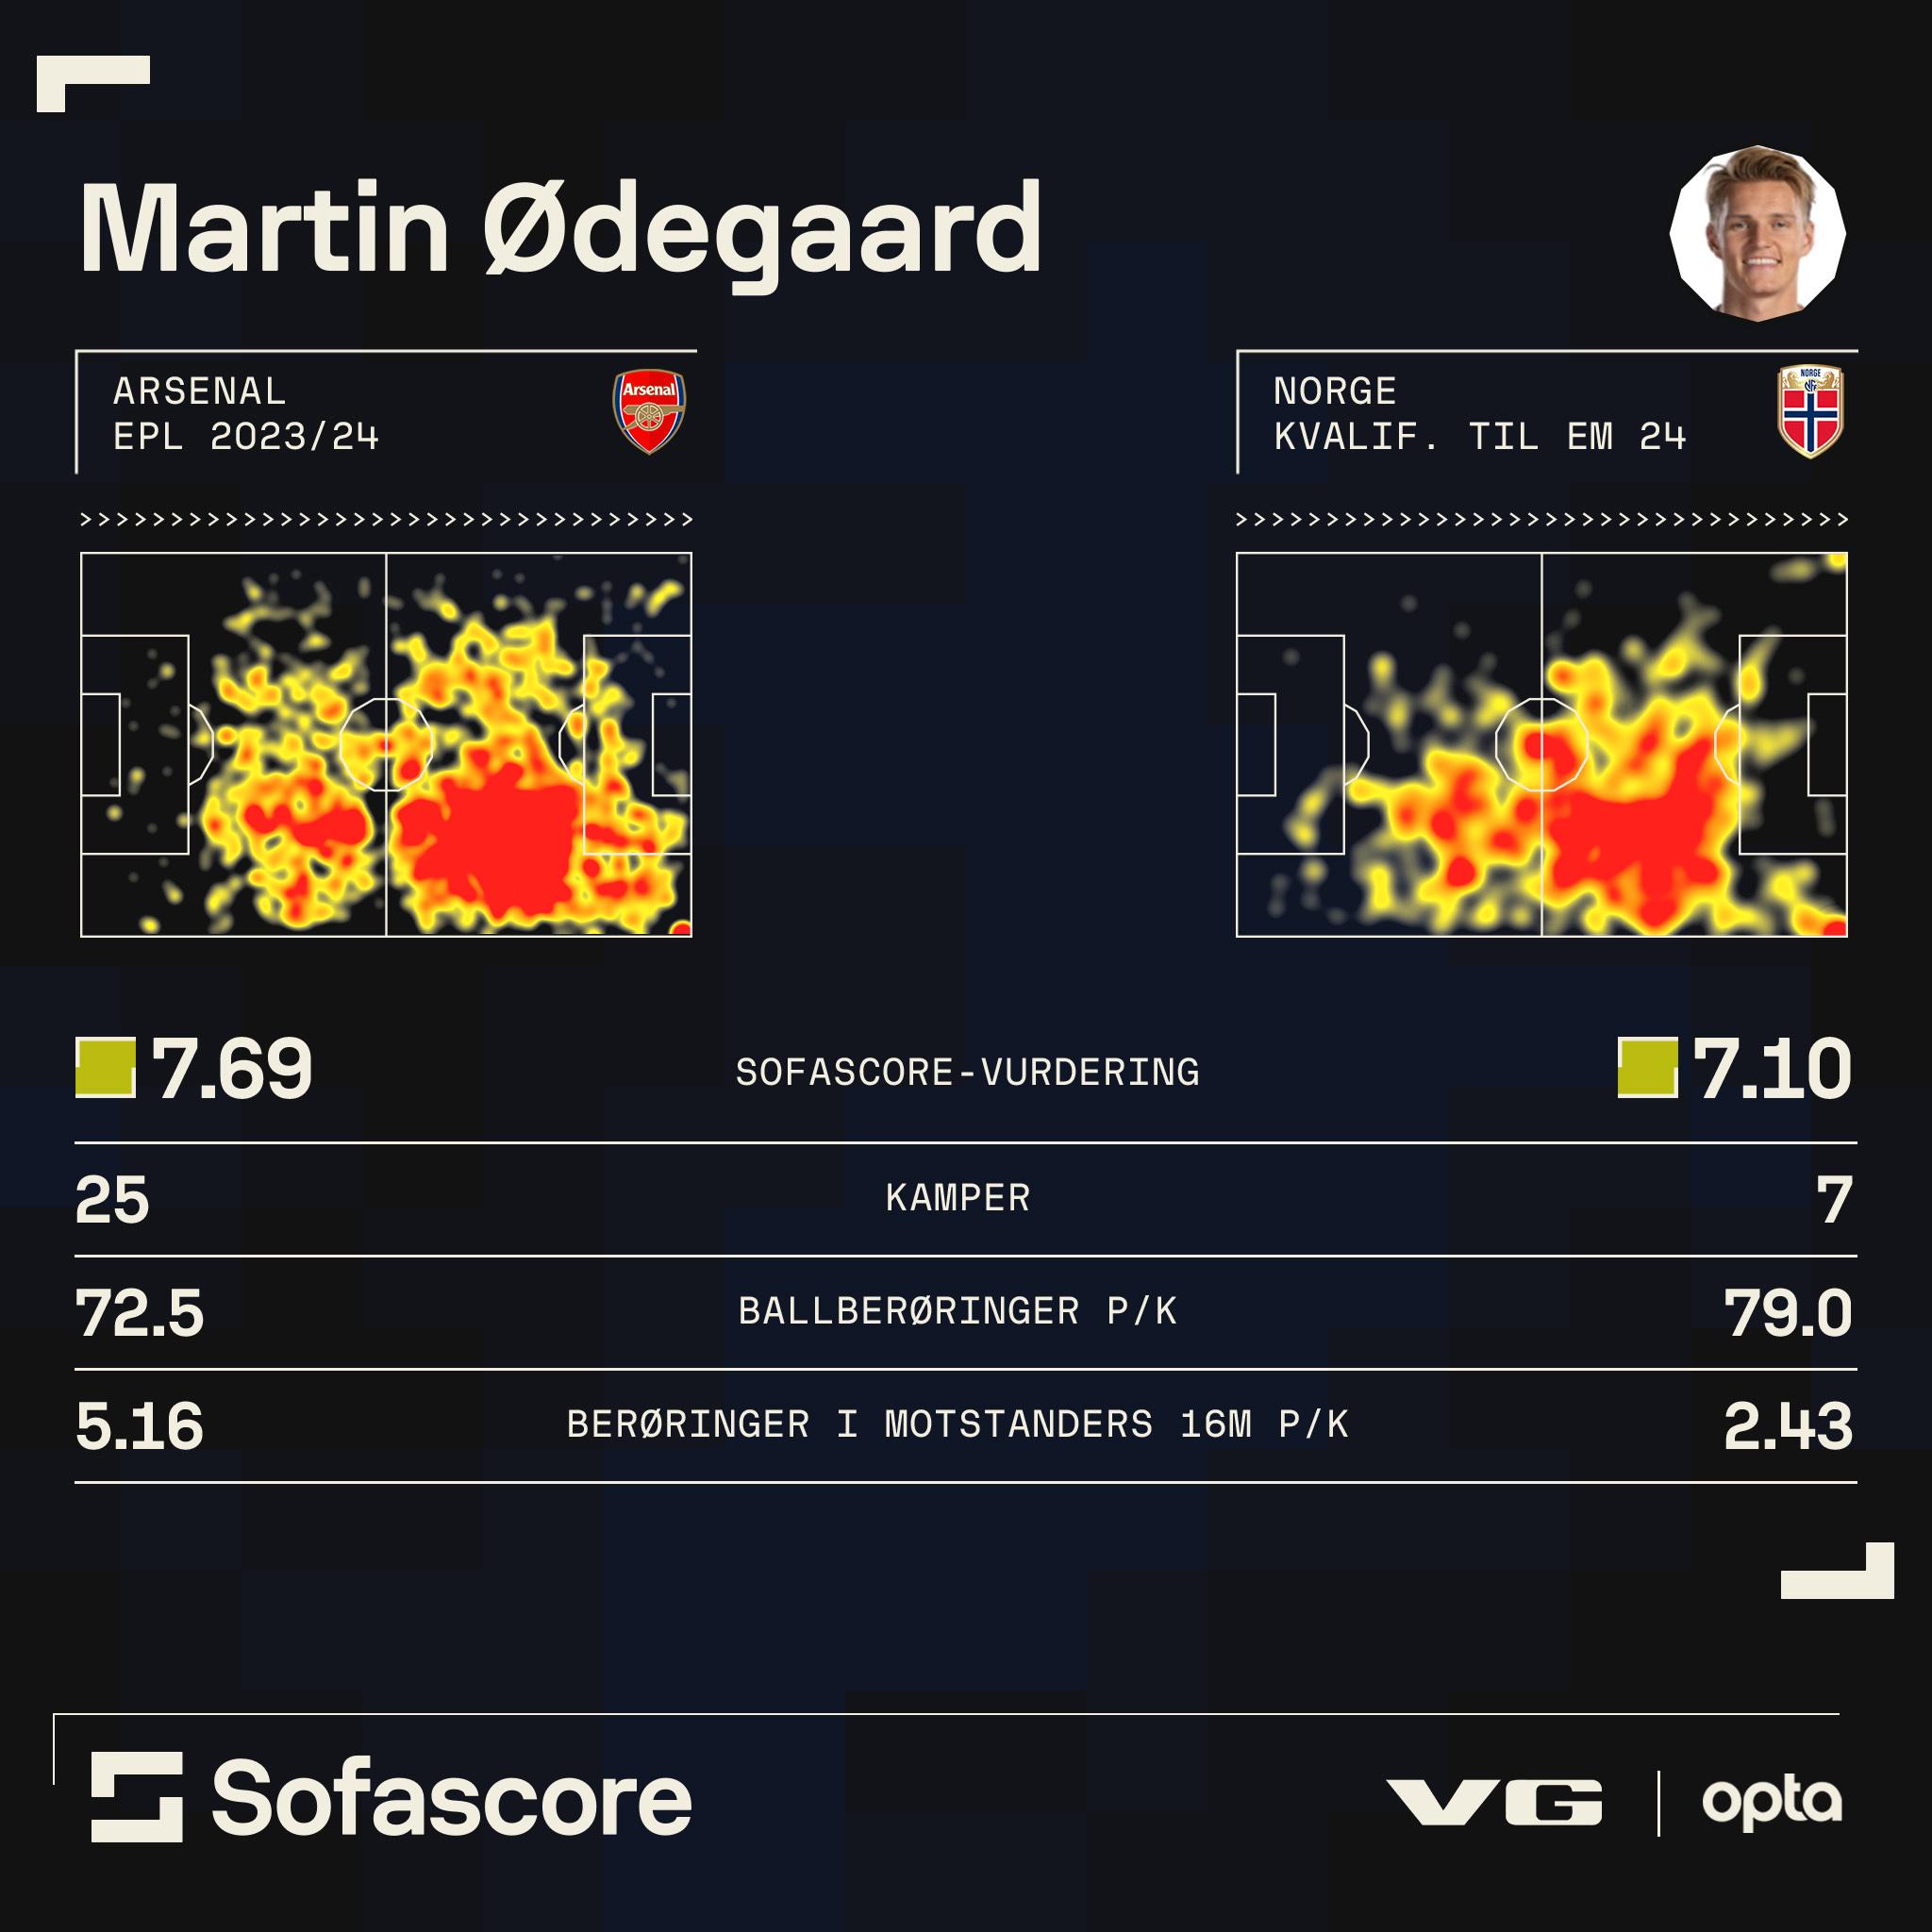 Statistikken viser Martin Ødegaard for Arsenal i Premier League denne sesongen sammenlignet med Martin Ødegaard for Norge i EM-kvalifiseringen. Sofascore henter tallene sine fra statistikktjenesten Opta.